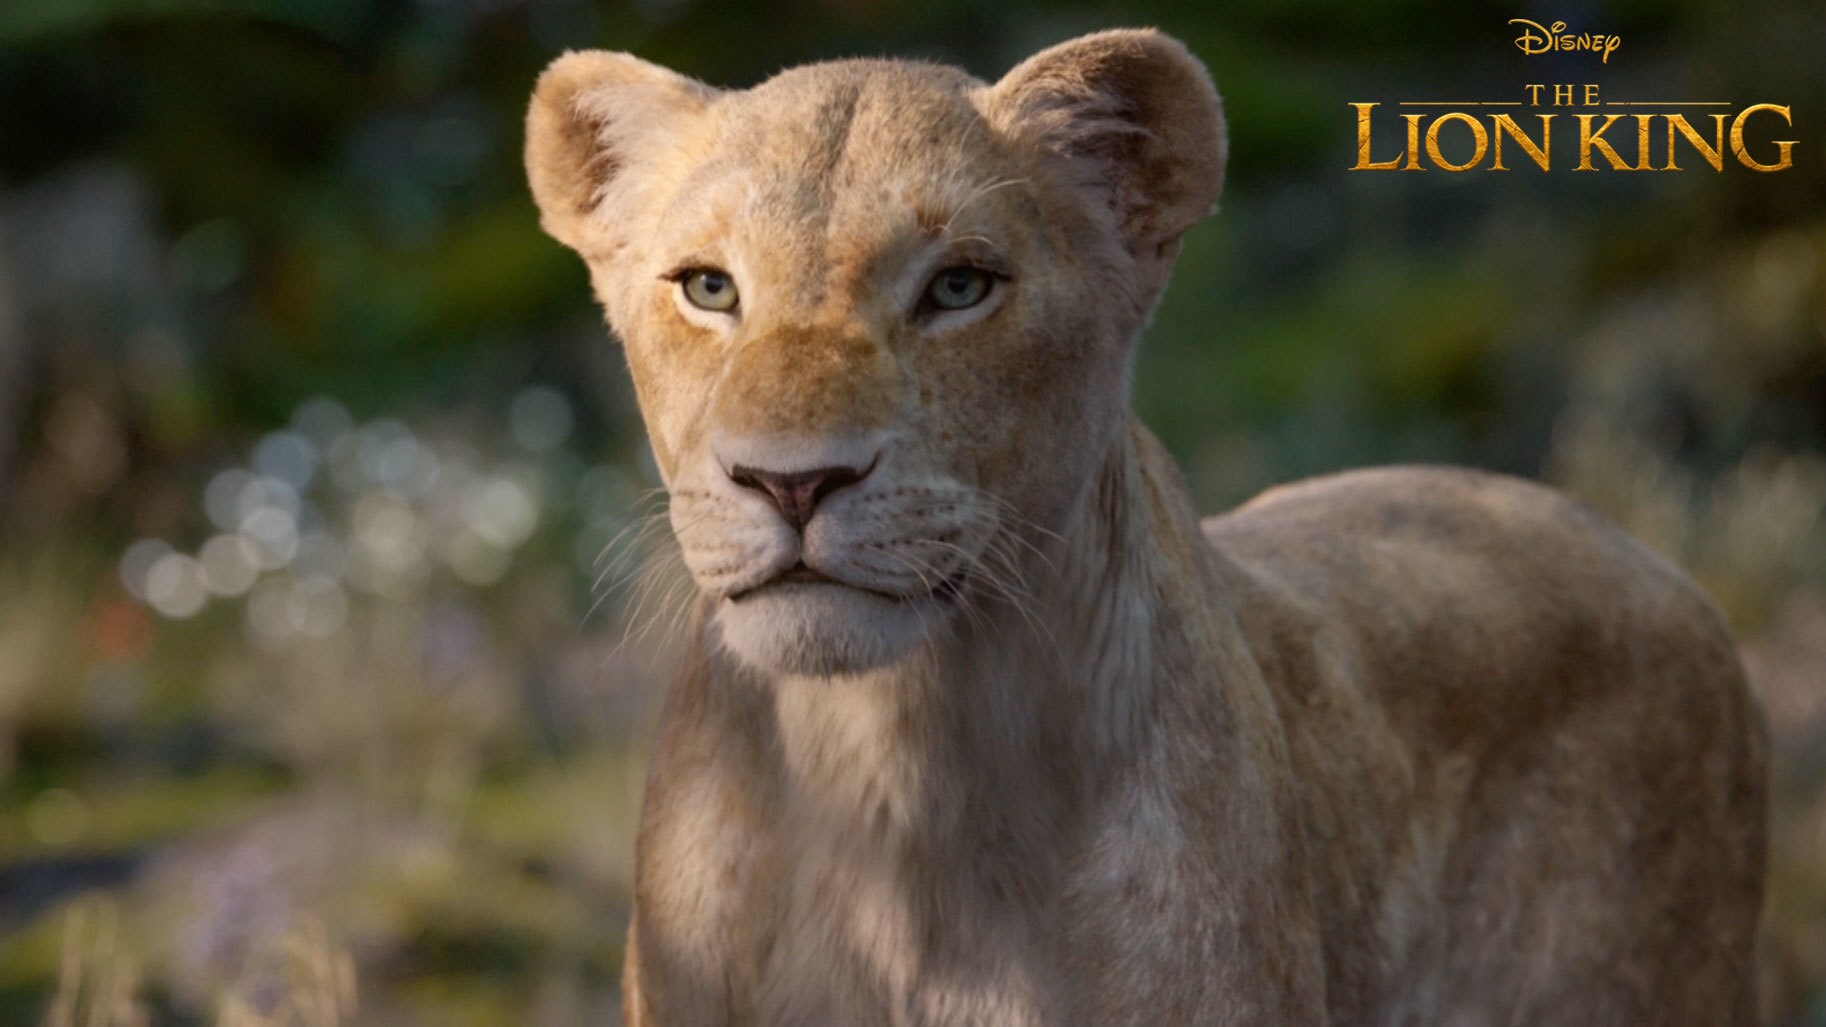 The Lion King Sneak Peek | “Come Home”